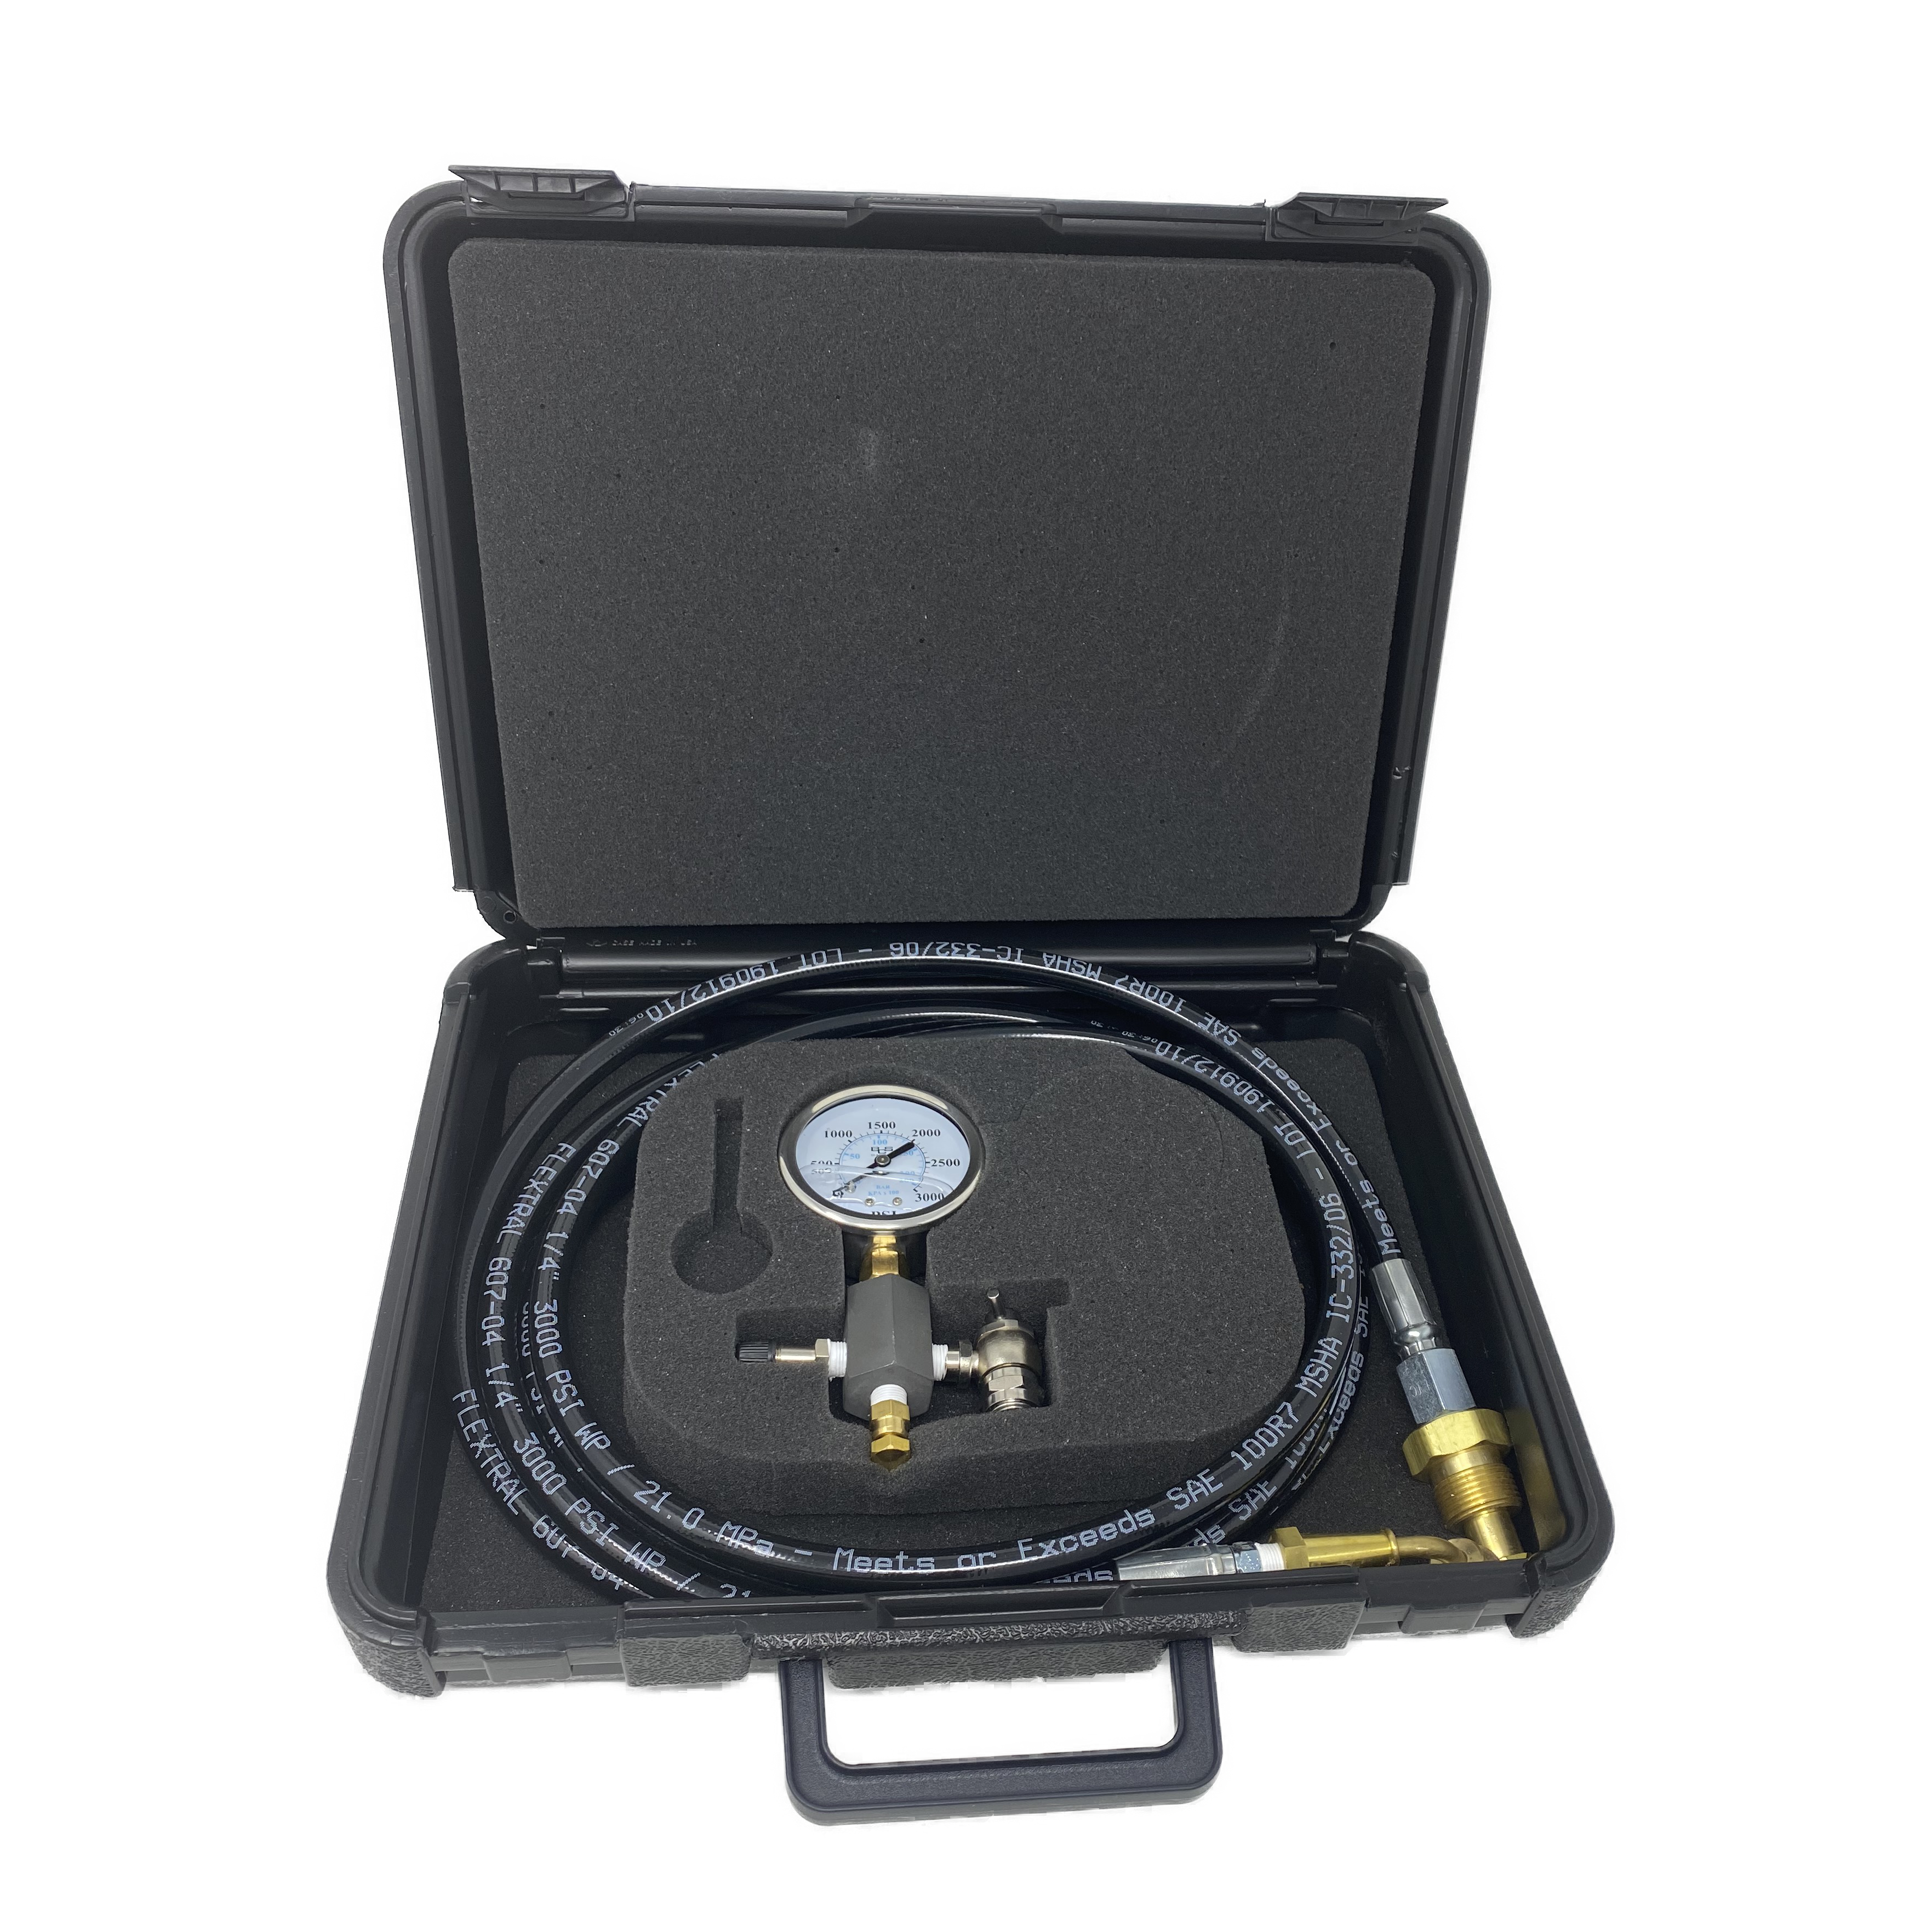 CKT-0030 : SFP Charging Kit for Bottom Repairable 3000 PSI Accumulators